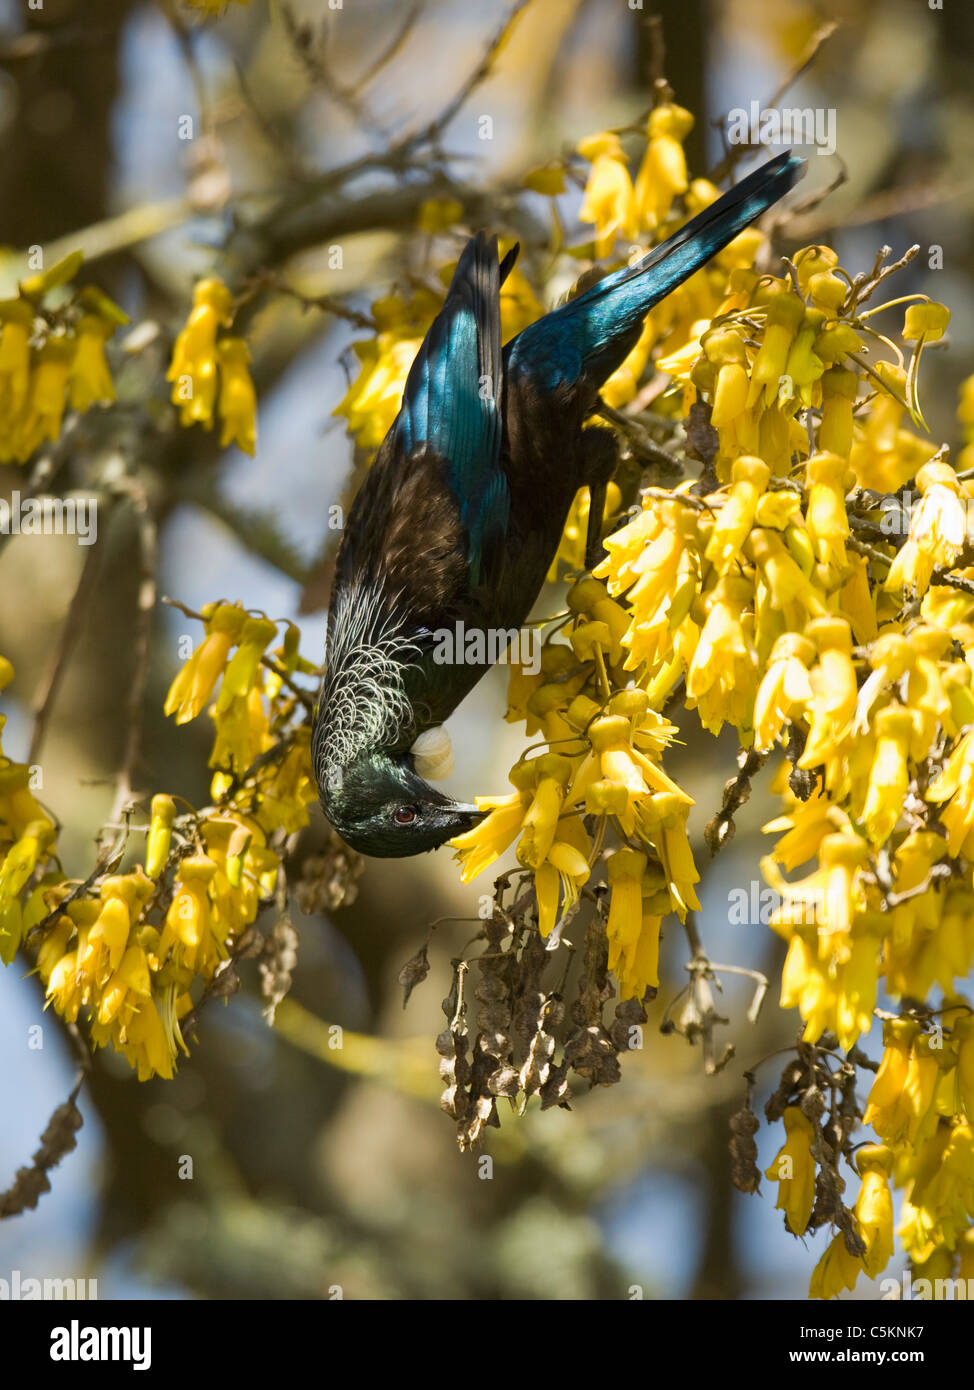 Male Tui bird feeding on nectar in a Kowhai tree Stock Photo